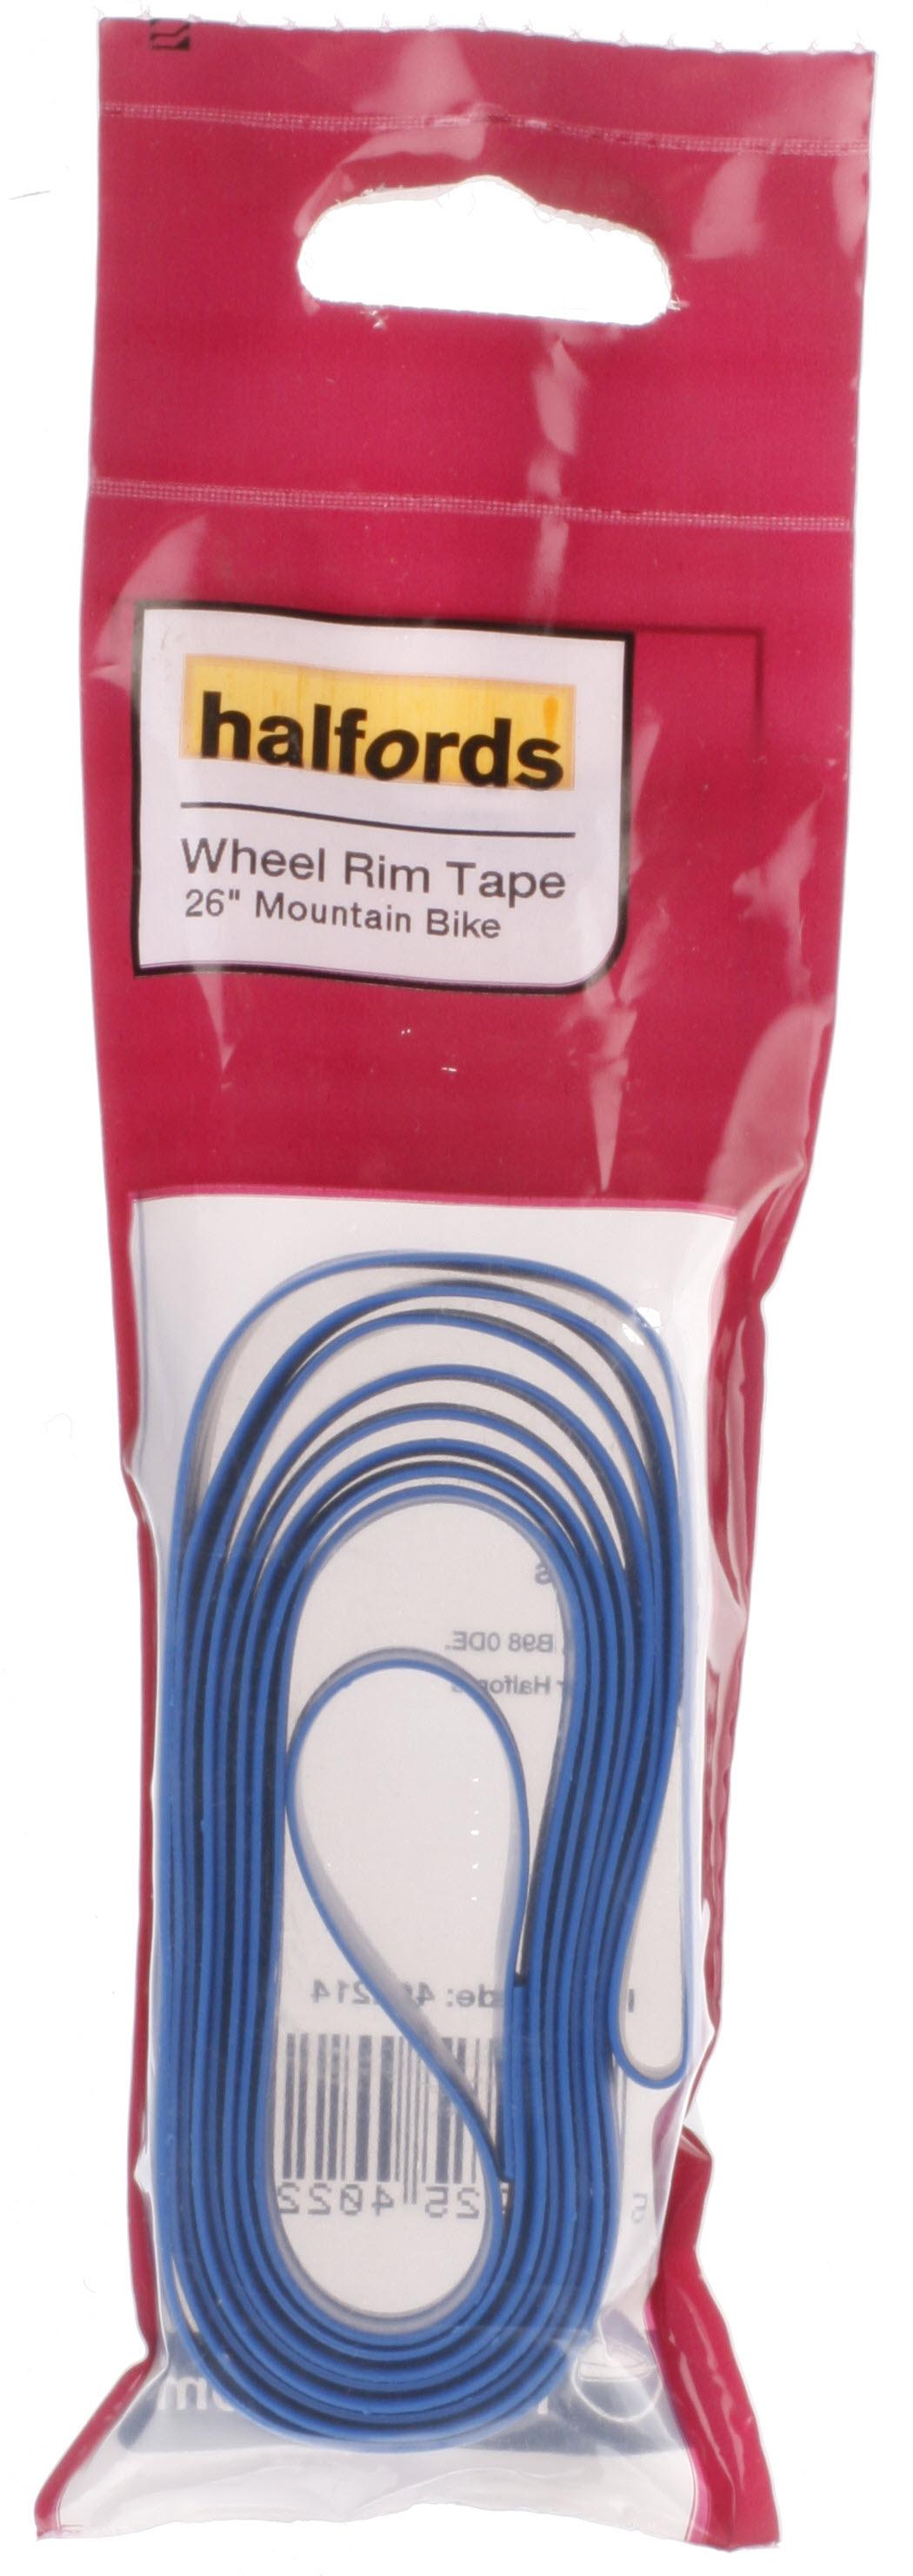 Halfords Bike Wheel Rim Tape - 26 Inch